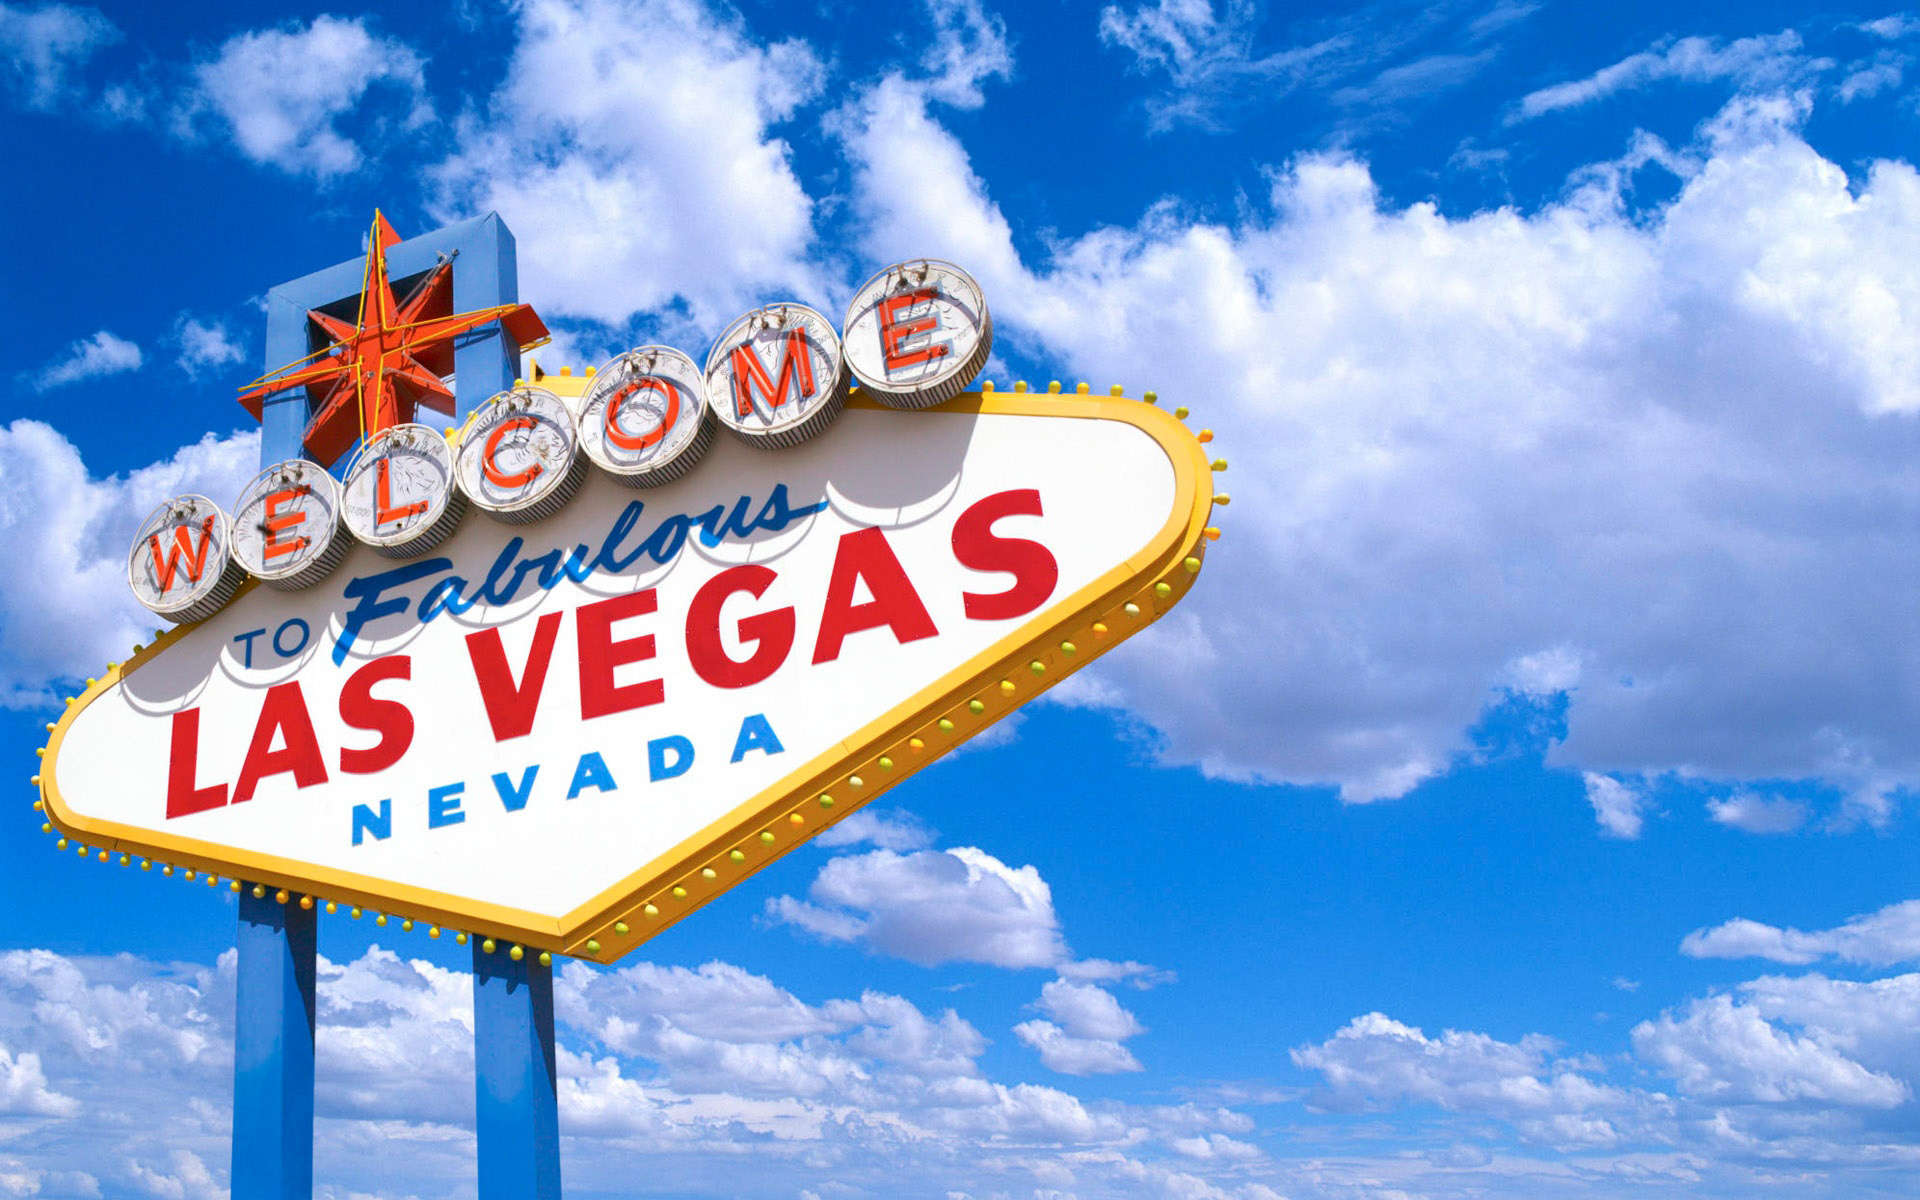 clouds, signs, Las Vegas, blue skies - desktop wallpaper